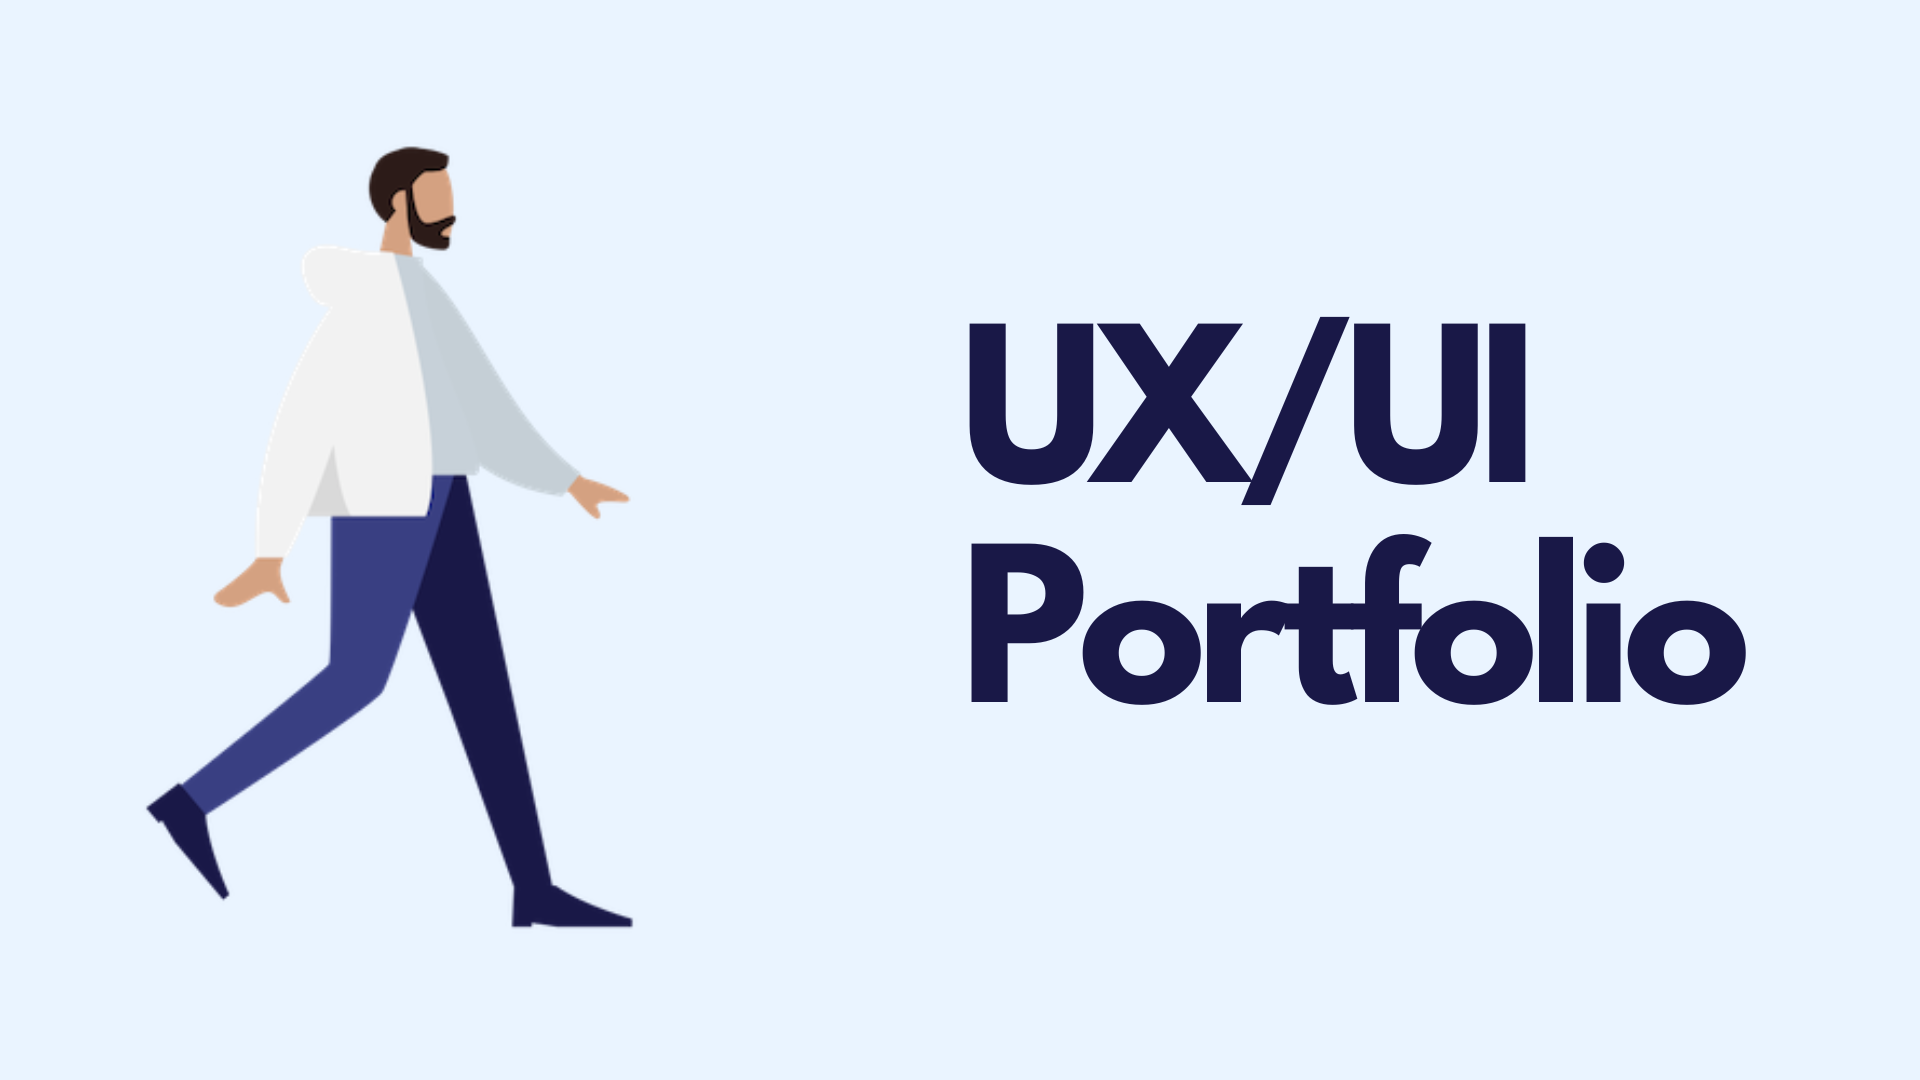 UX Portfolio